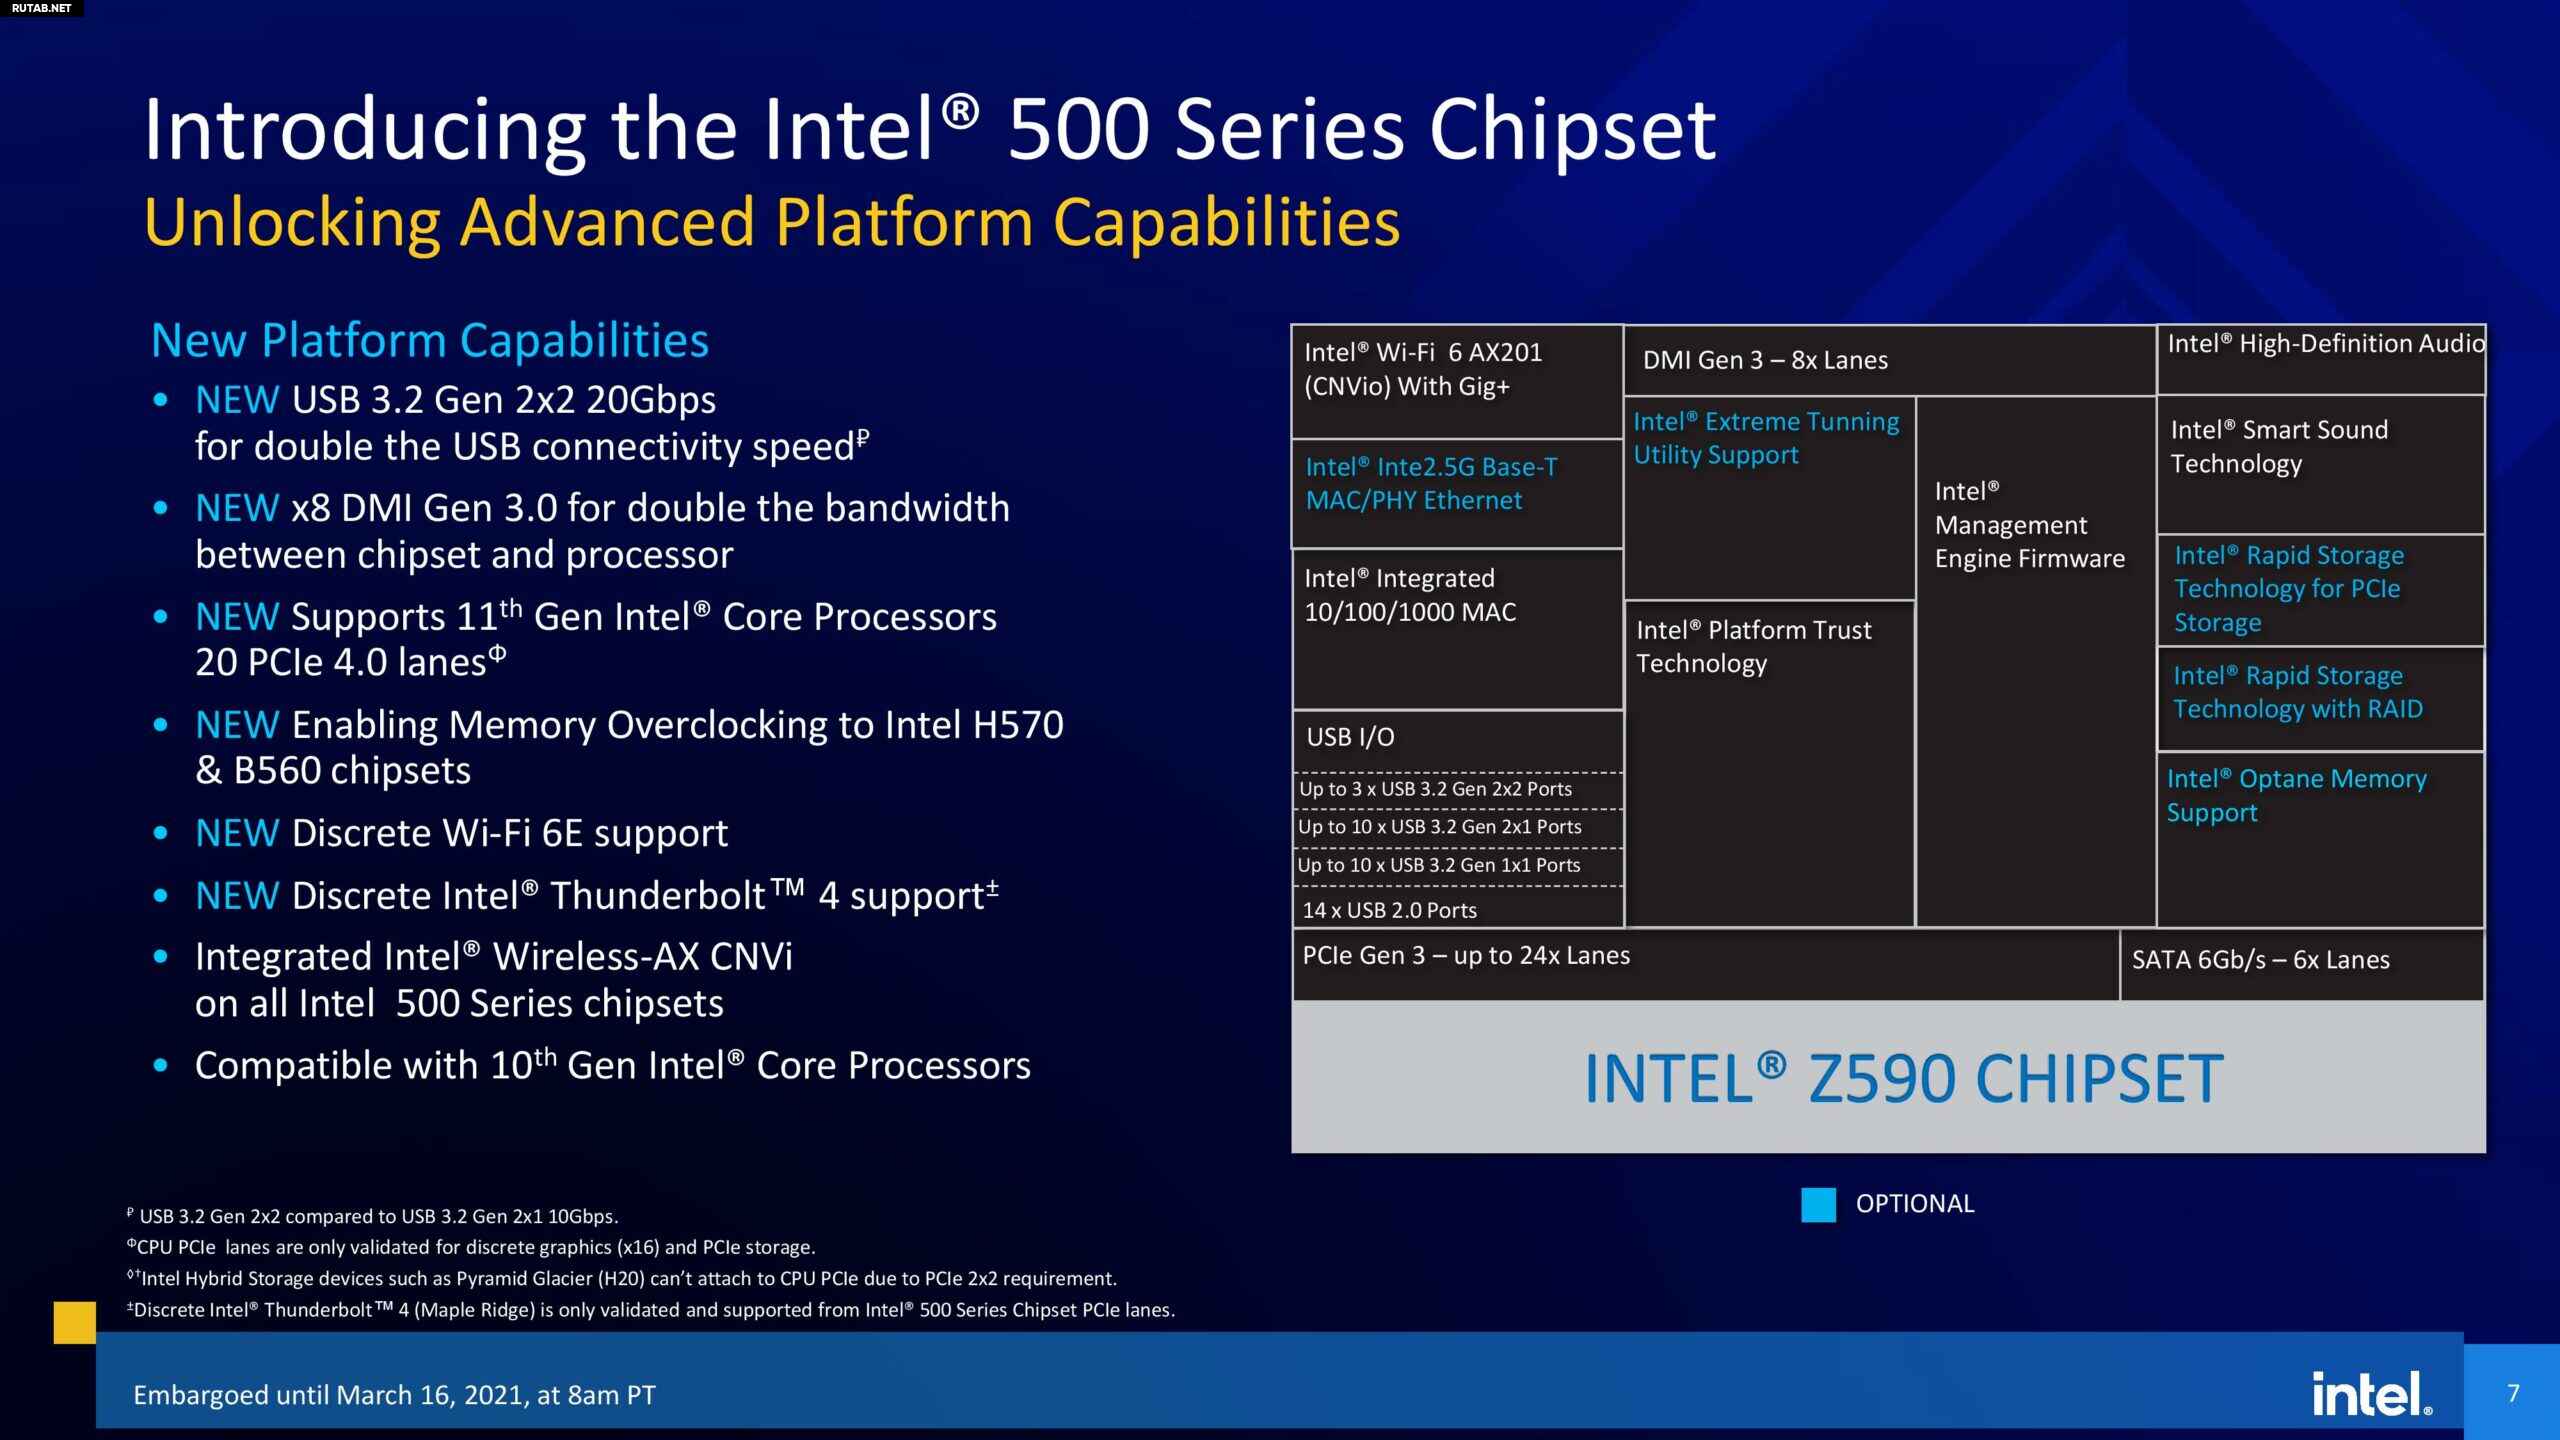 7 series chipset. Intel z590 чипсет. Поколение процессоров Intel Rocket Lake. Процессоры и чипсеты Intel 1-8 поколений. Архитектура процессора Intel Core i7 9 поколения.